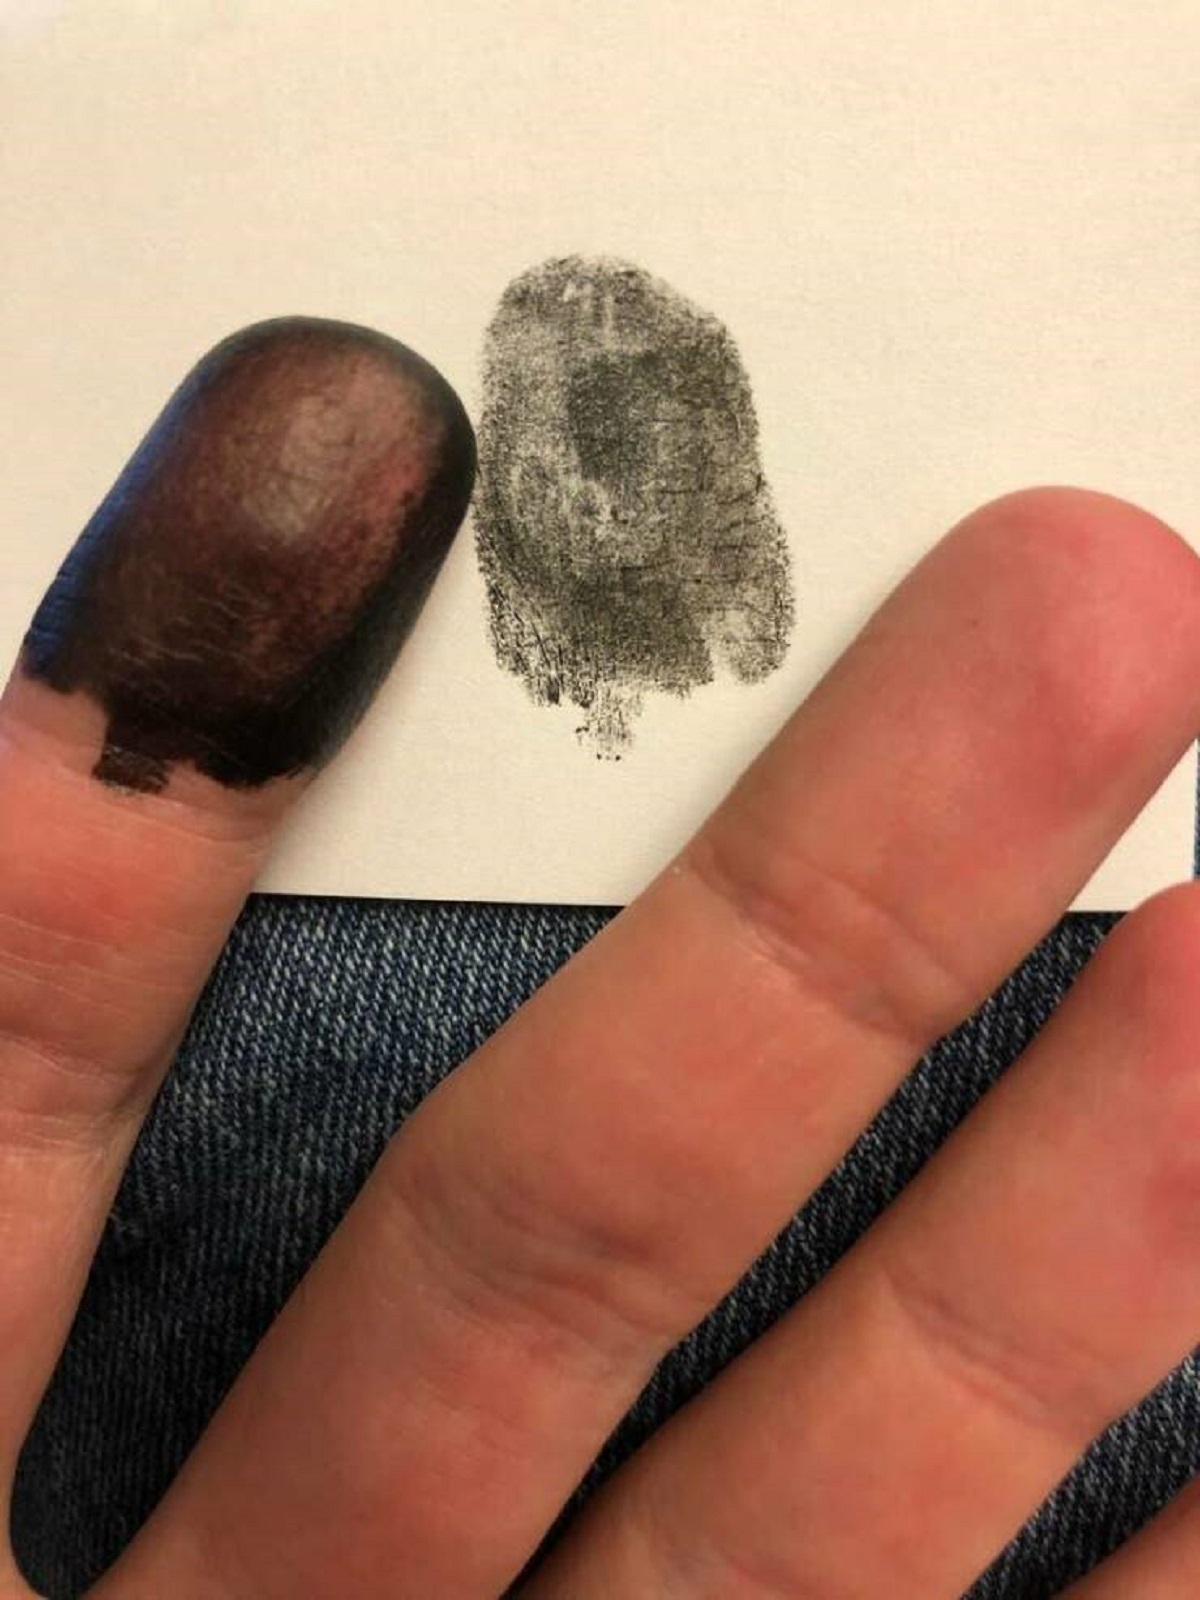 people born without fingerprints